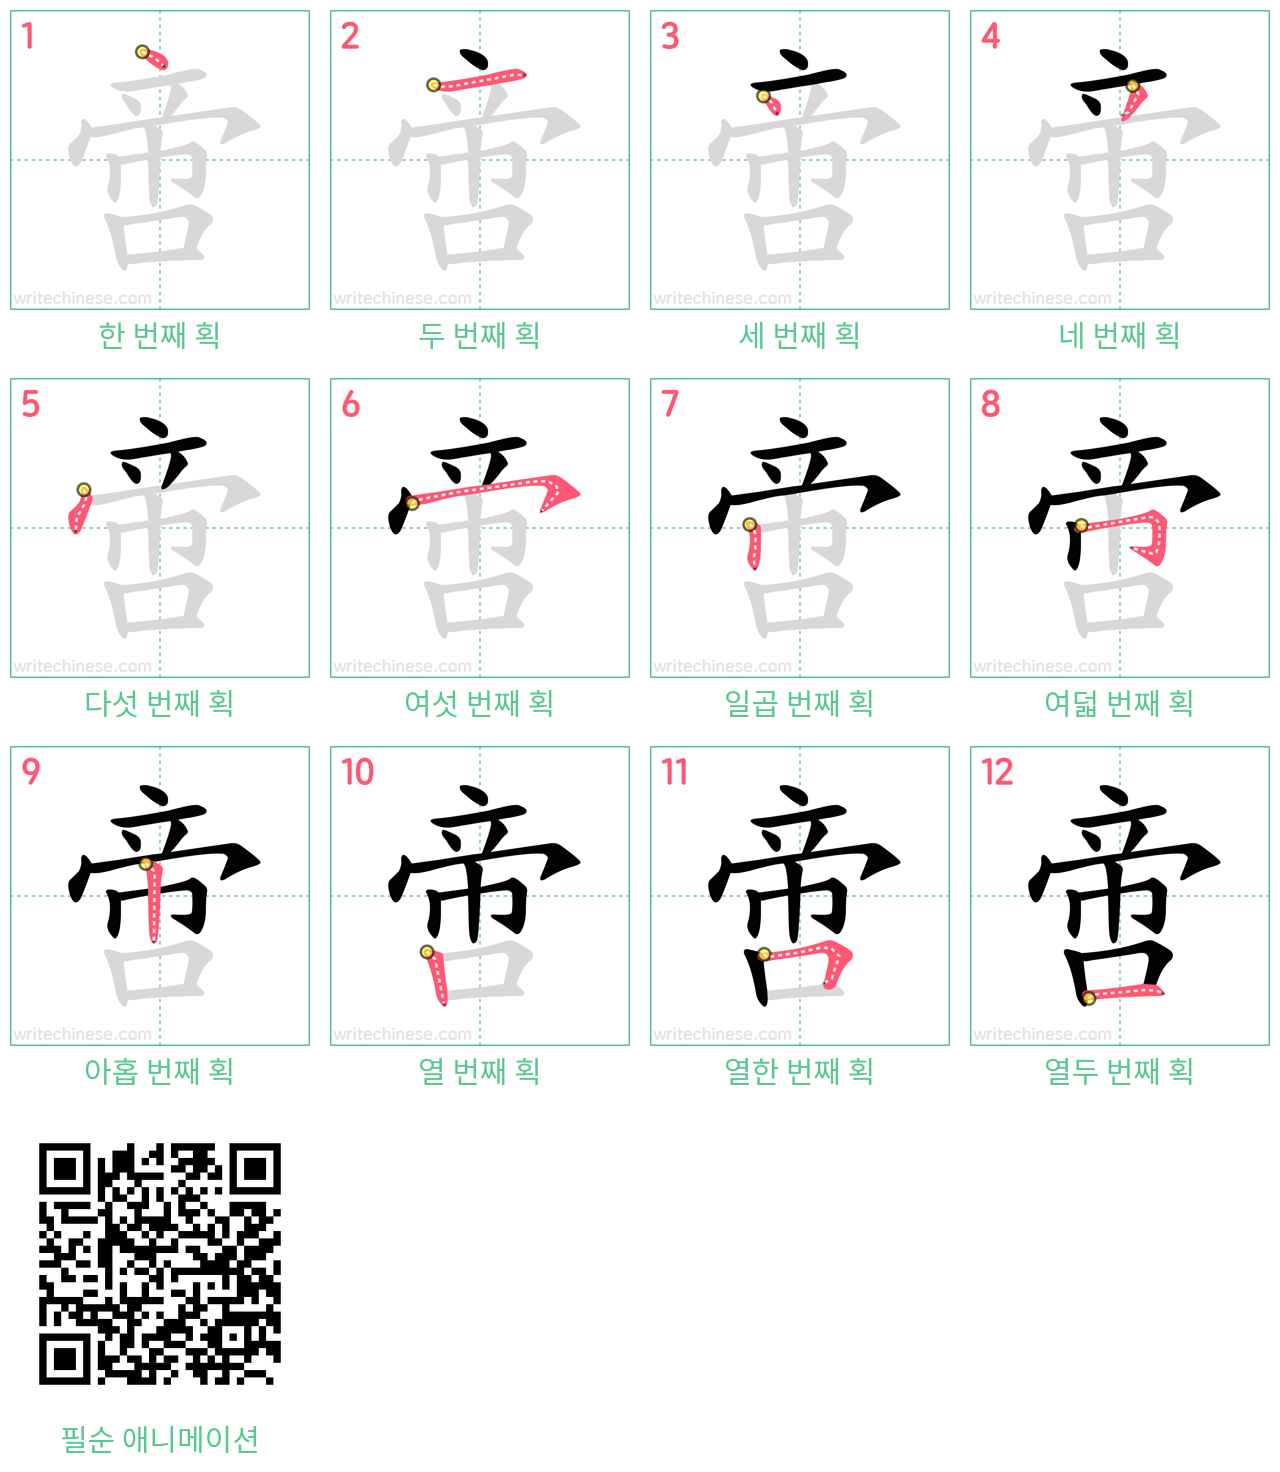 啻 step-by-step stroke order diagrams